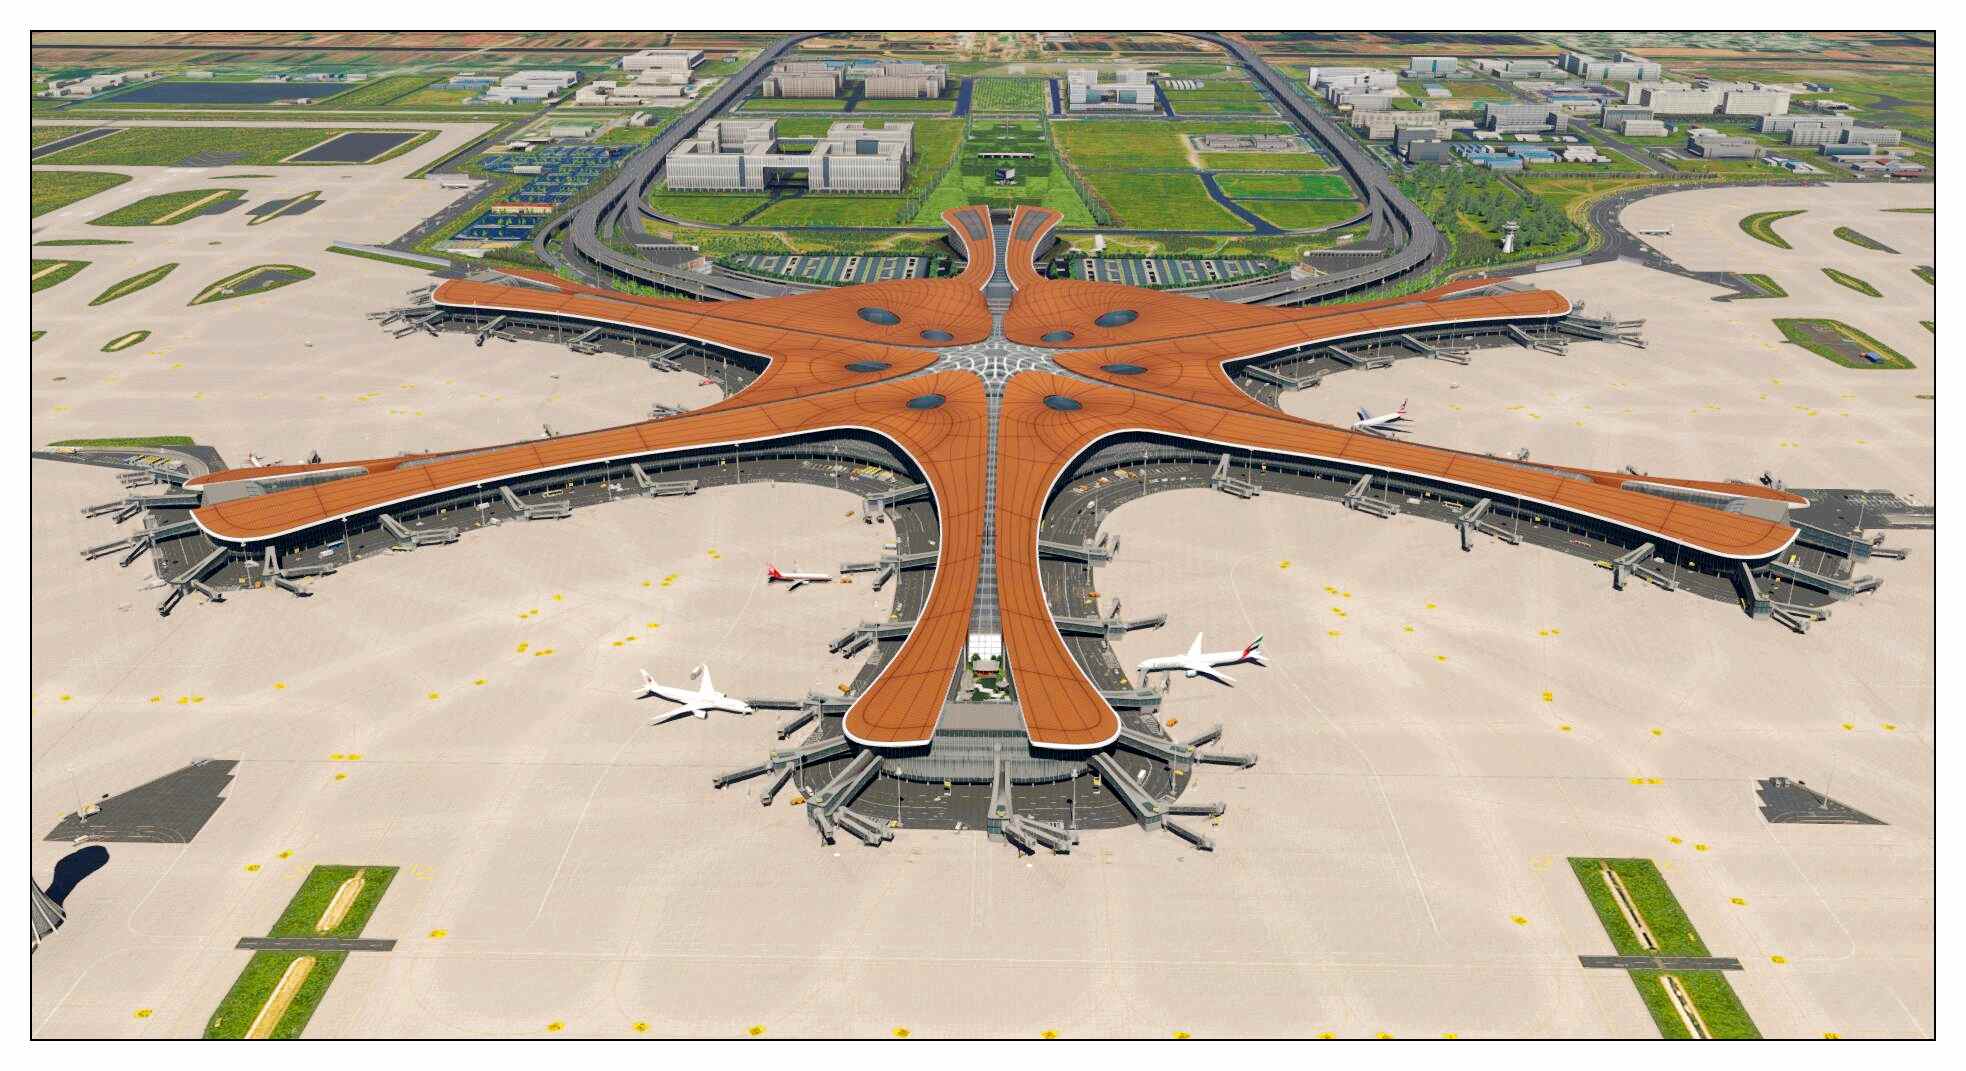 【X-Plane】ZBAD北京大兴国际机场-正式发布-2582 